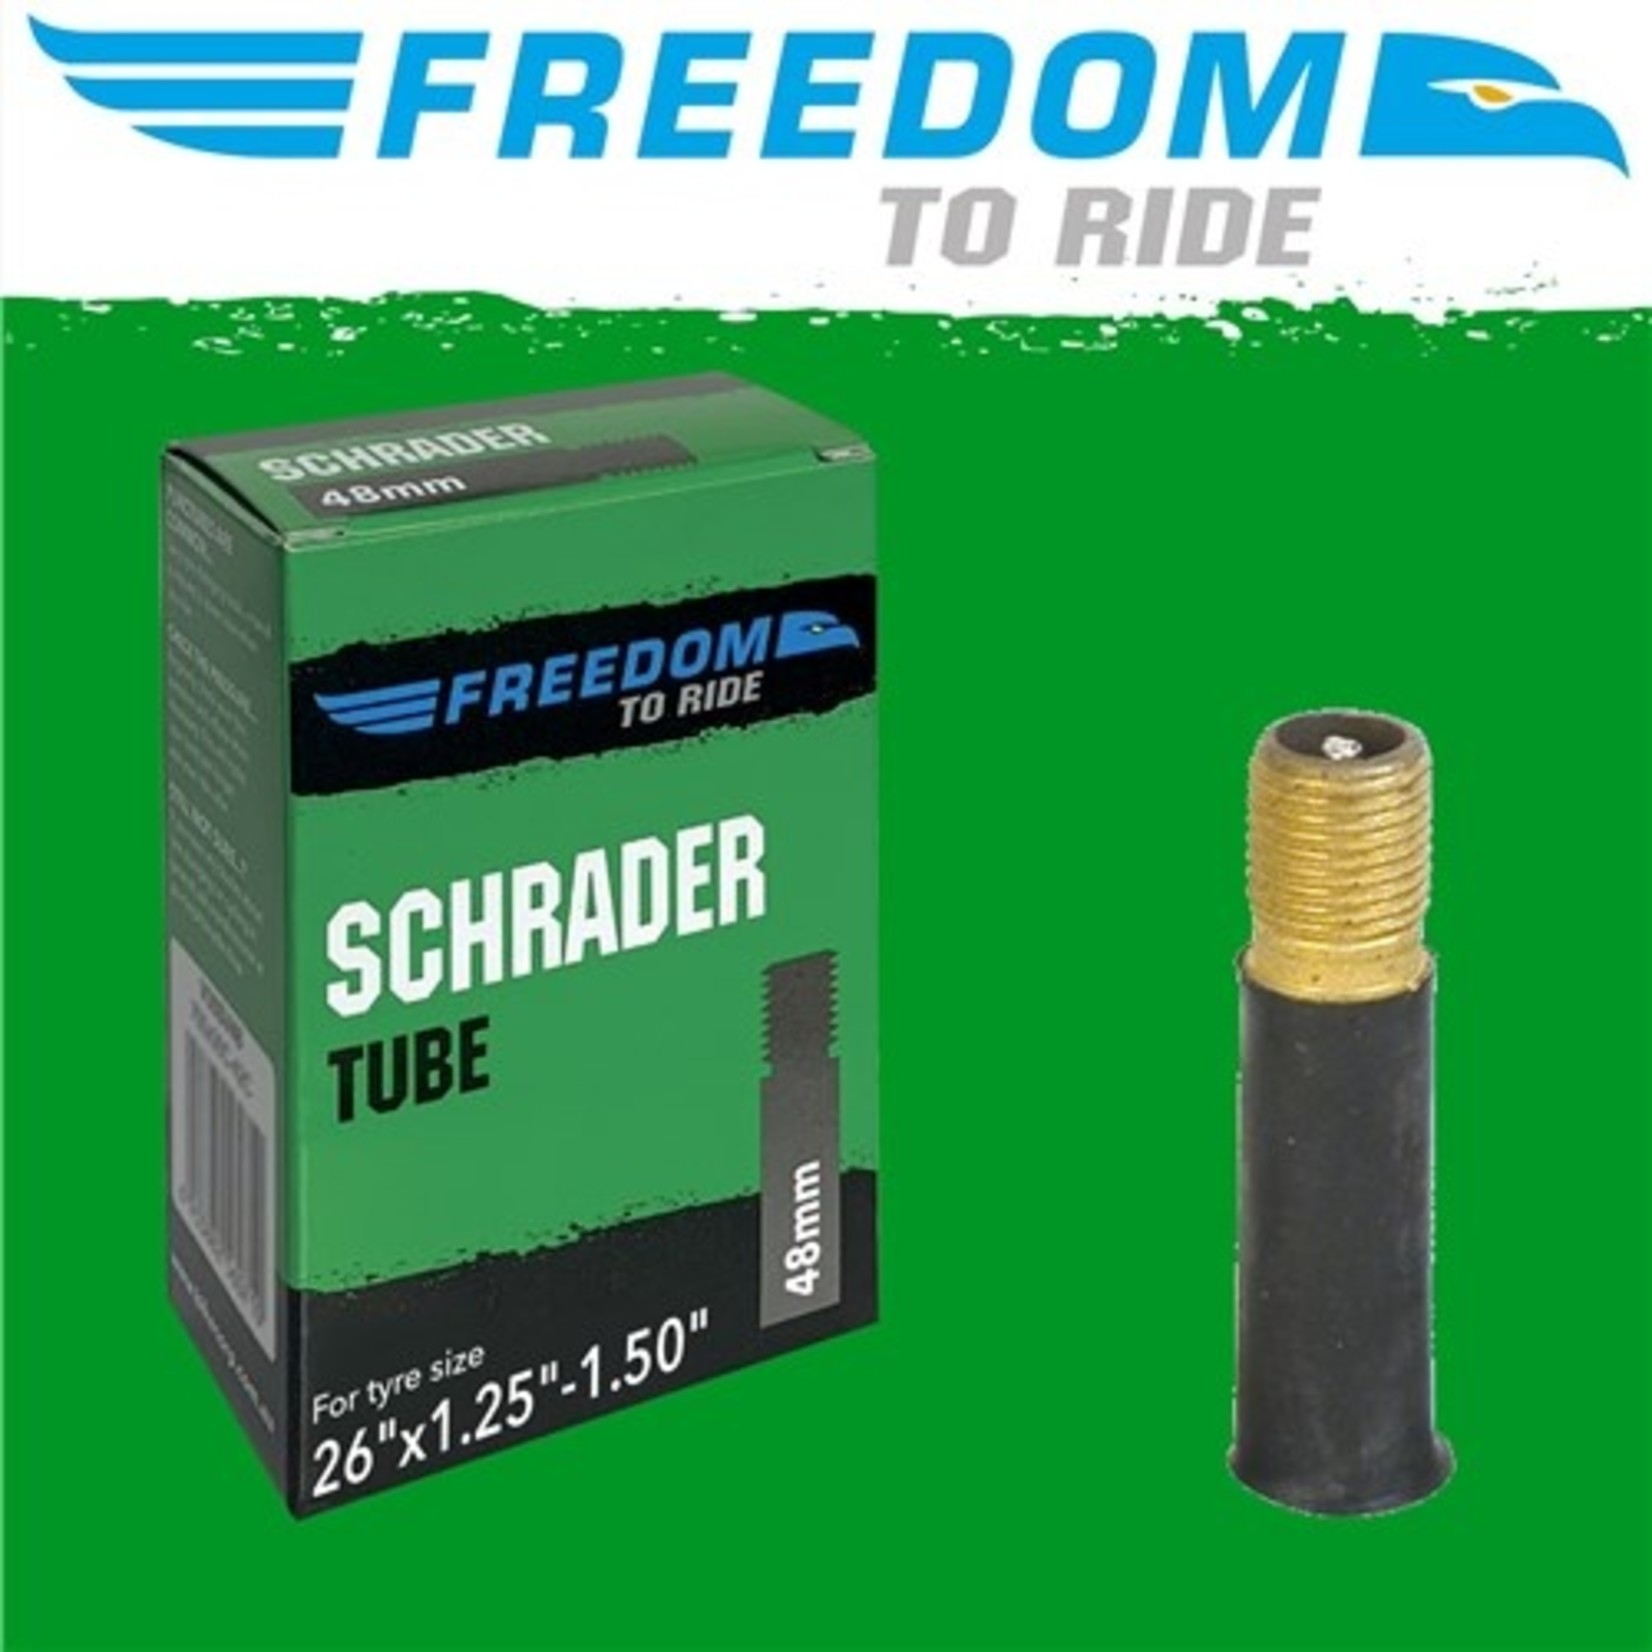 Freedom Freedom Bike Tube - 26"X1.25" - Schrader Valve